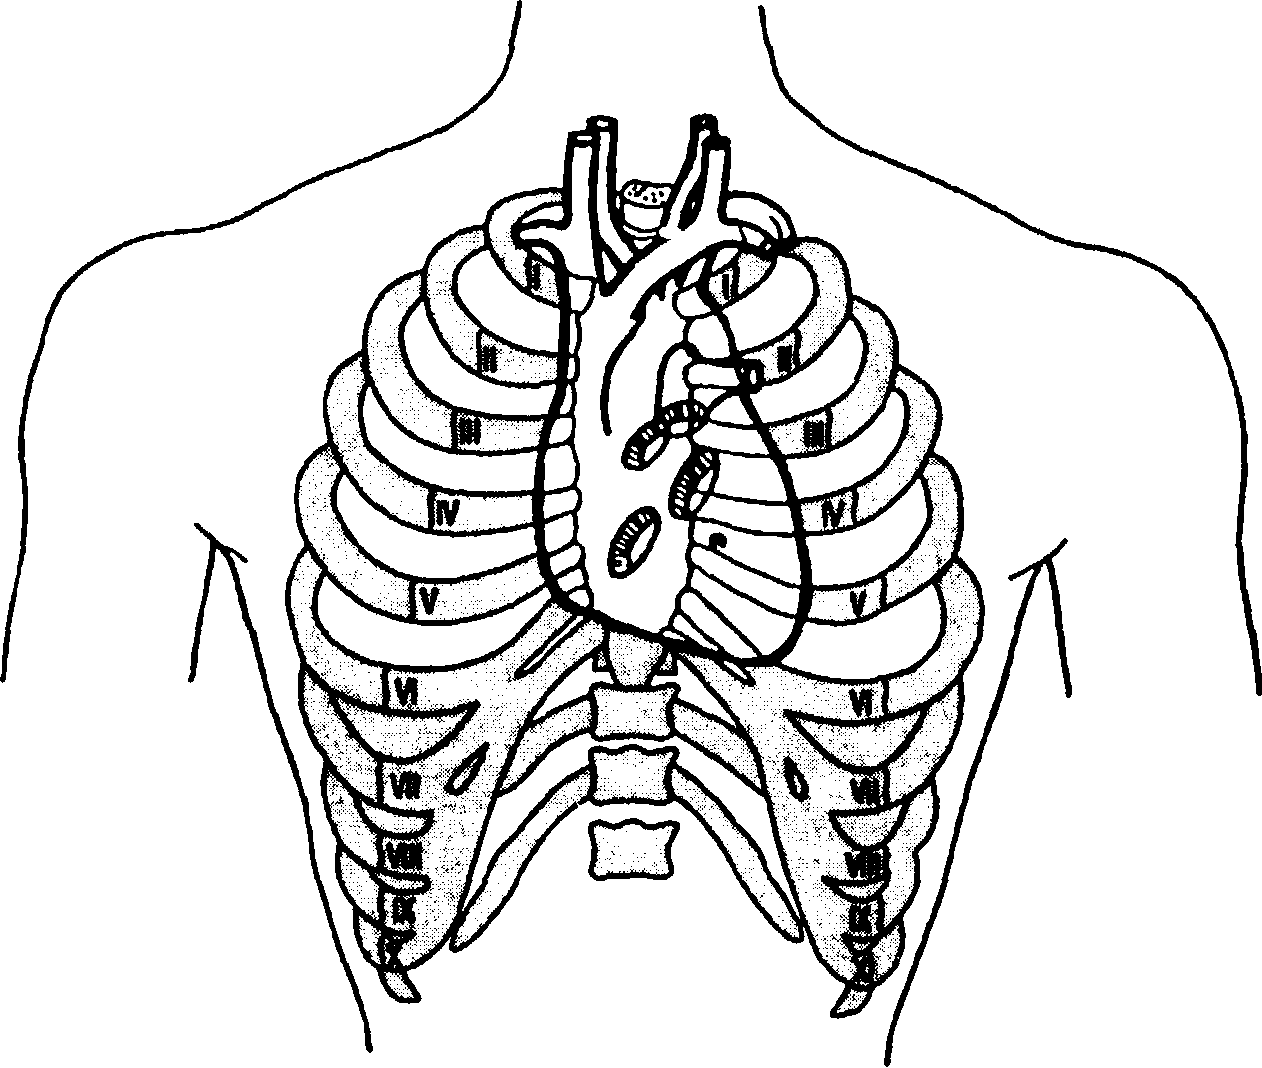 Клапаны сердца на грудной клетке. Межреберья грудной клетки. Грудная клетка человека межреберья. Топография выслушивания клапанов сердца. Грудная клетка человека анатомия межреберье.